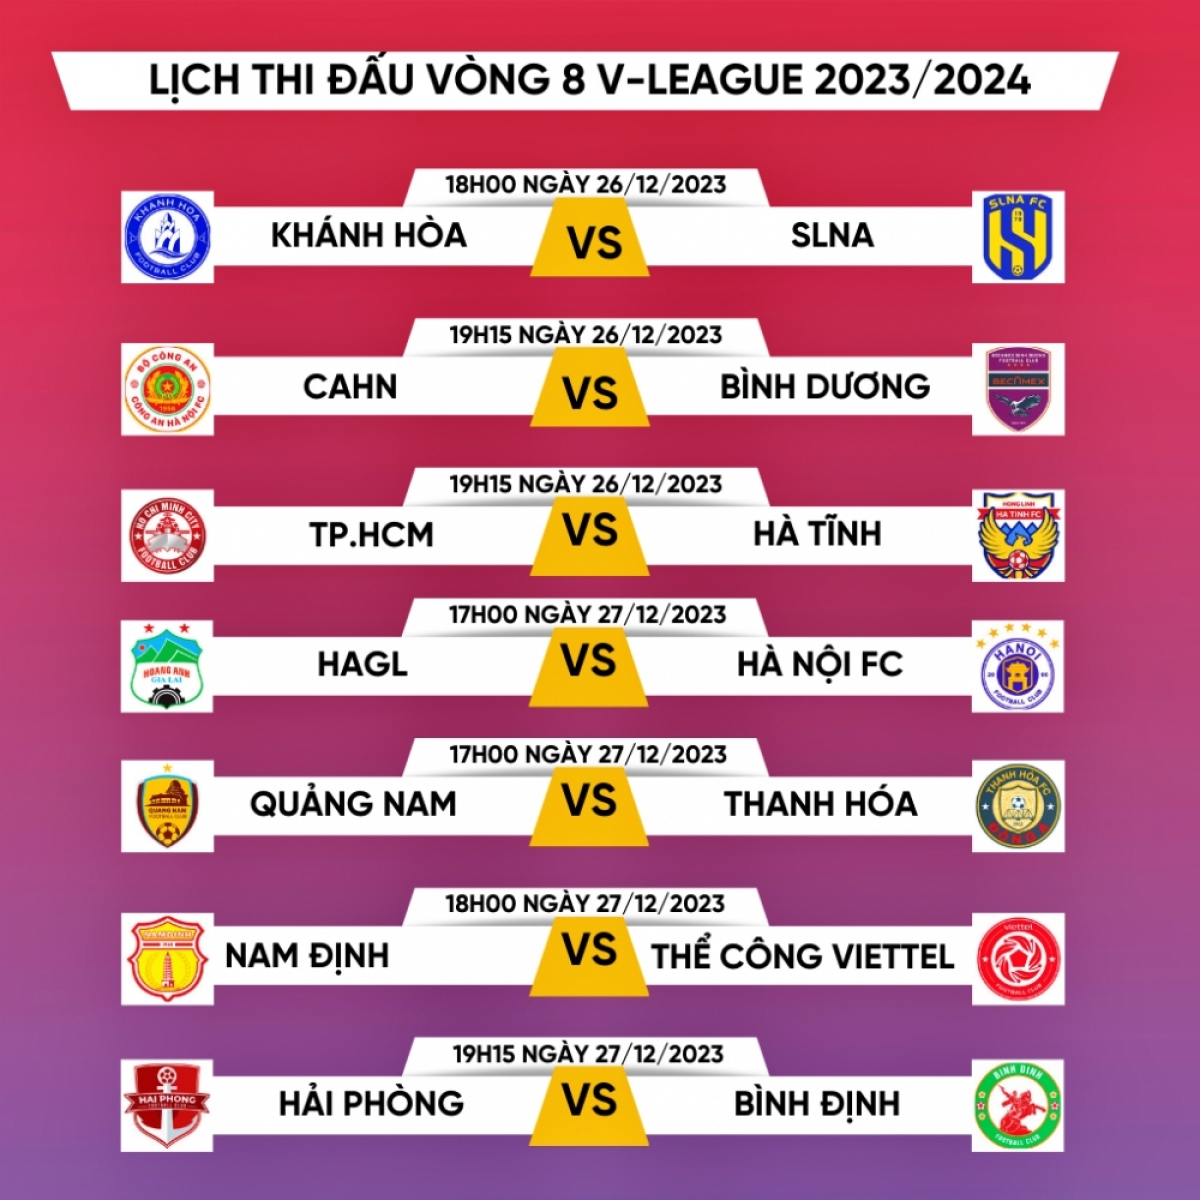 Lịch thi đấu vòng 8 V.League 2023-2024
 